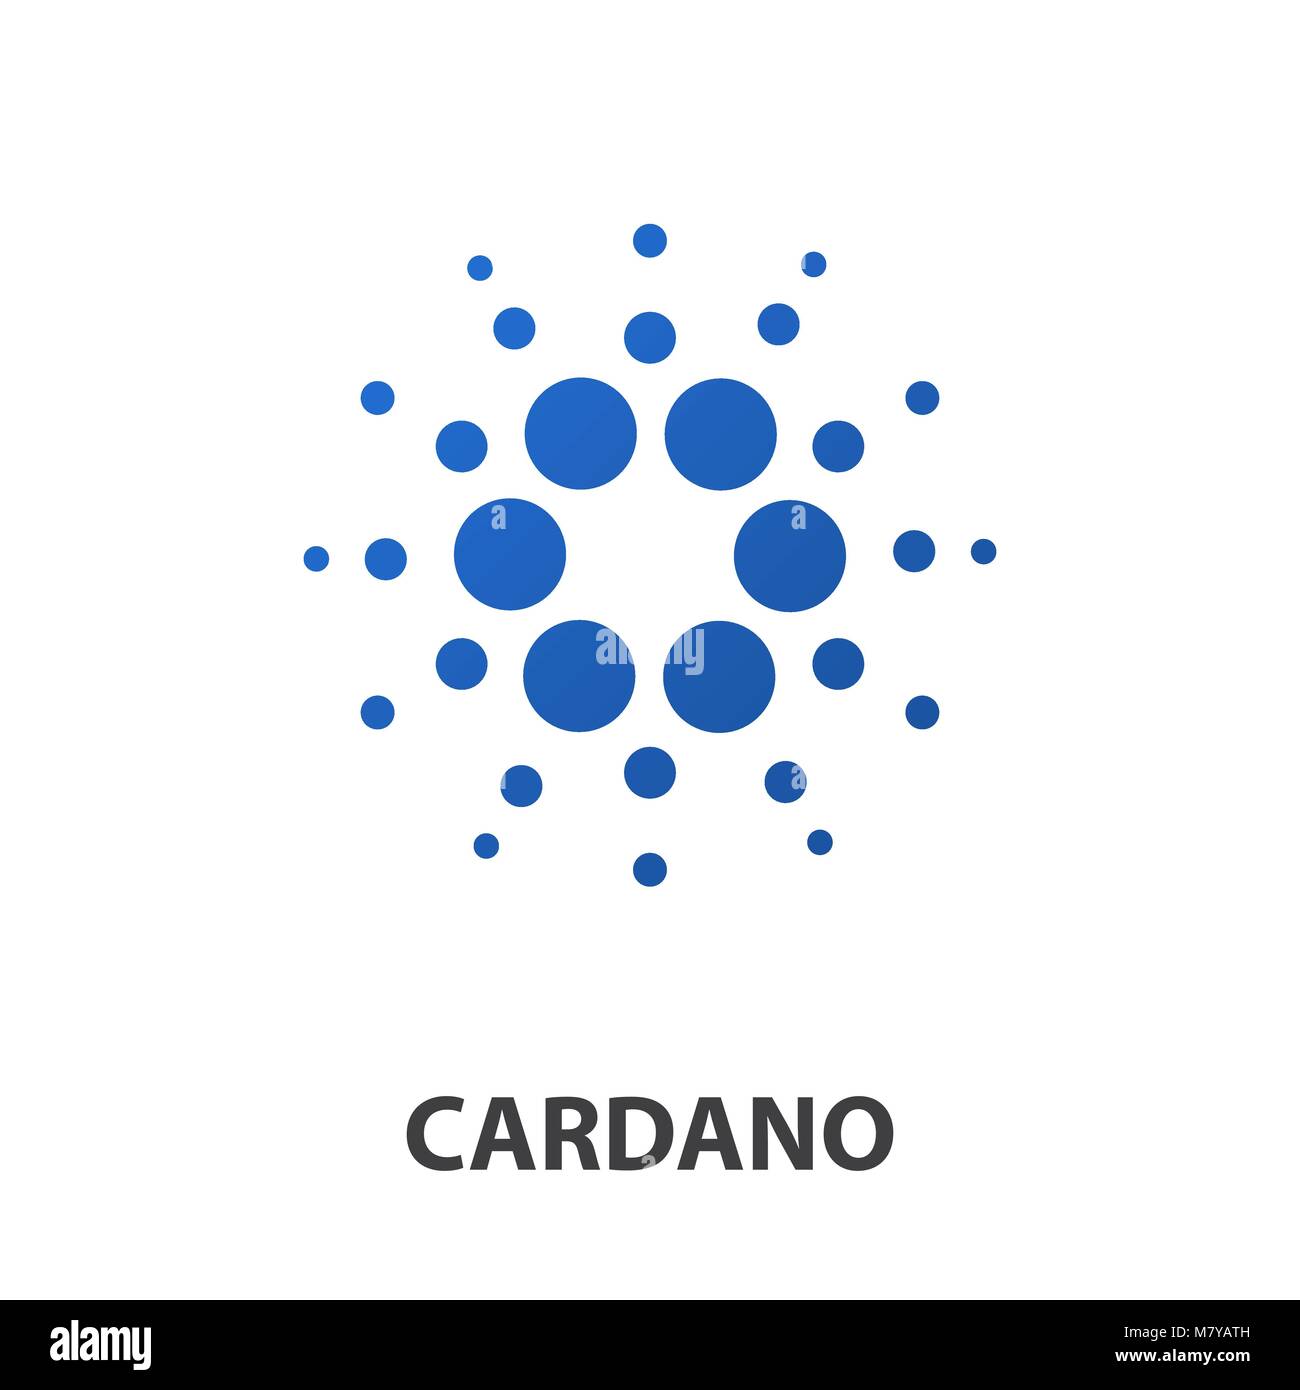 L'icône de pièce de monnaie crypto Cardano isolé sur un fond blanc. L'icône de l'argent virtuel.collection Cryptocurrency en télévision style.Symbole de la technologie à puce Illustration de Vecteur